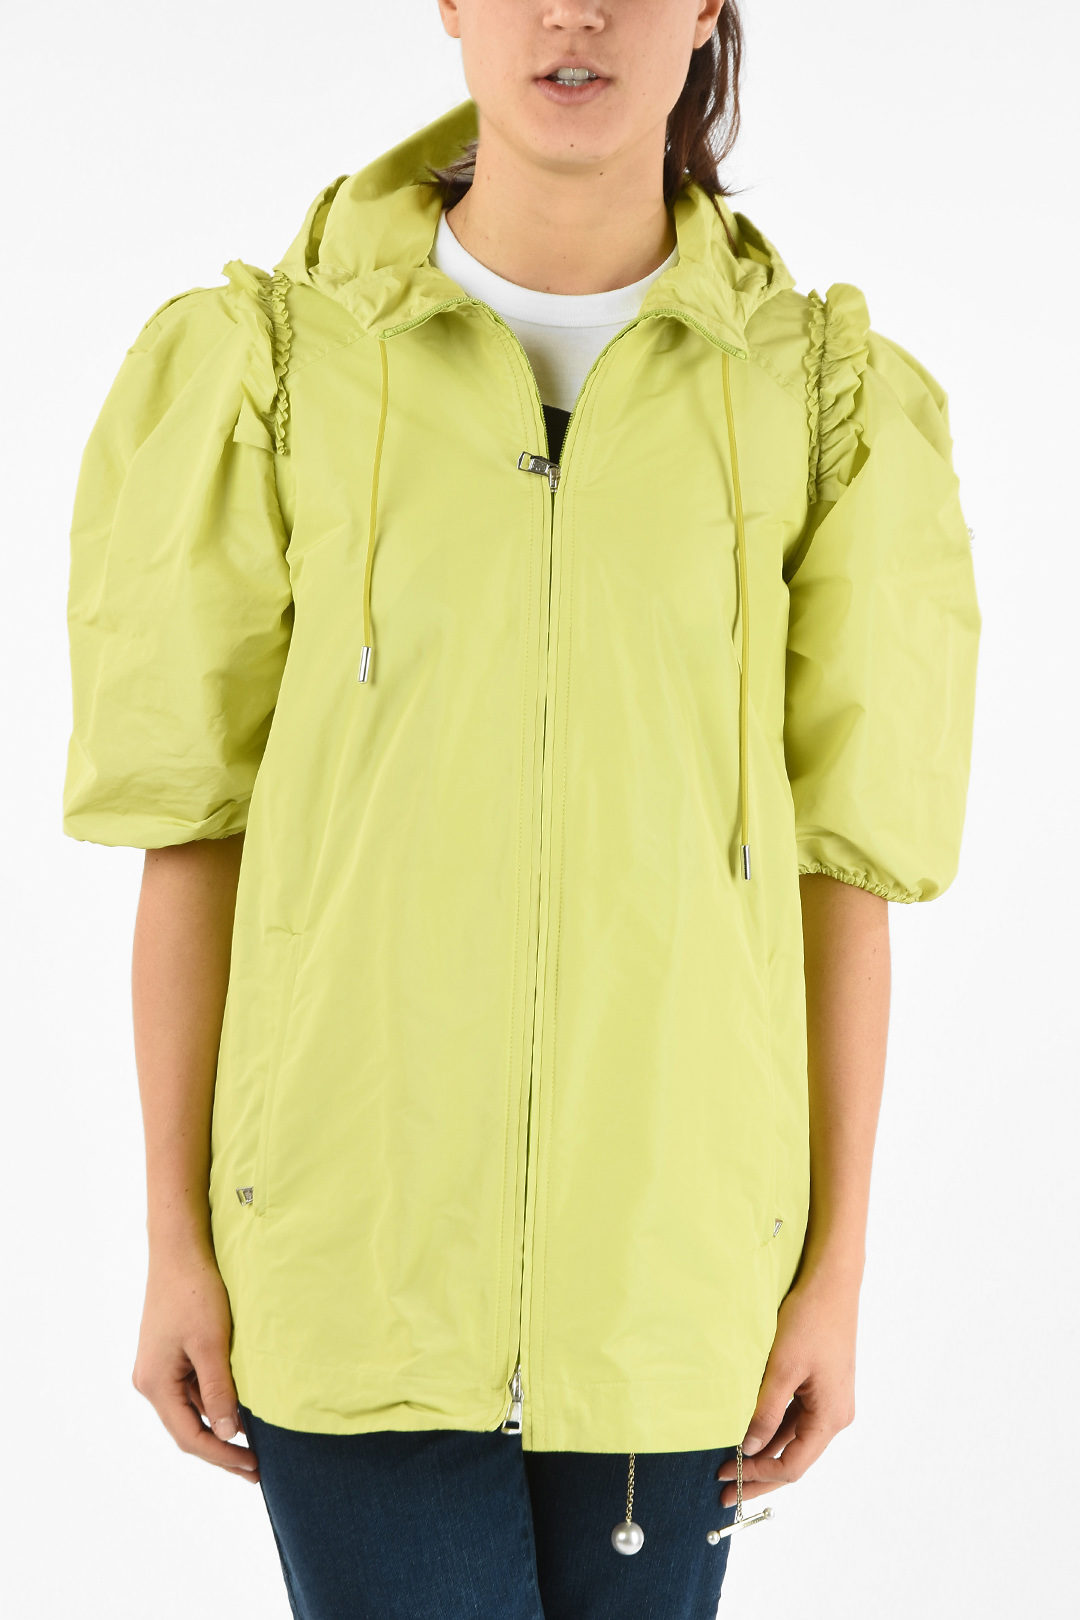 GENIUS 4 SIMONE ROCHA Waterproof PANSY Jacket with Hood